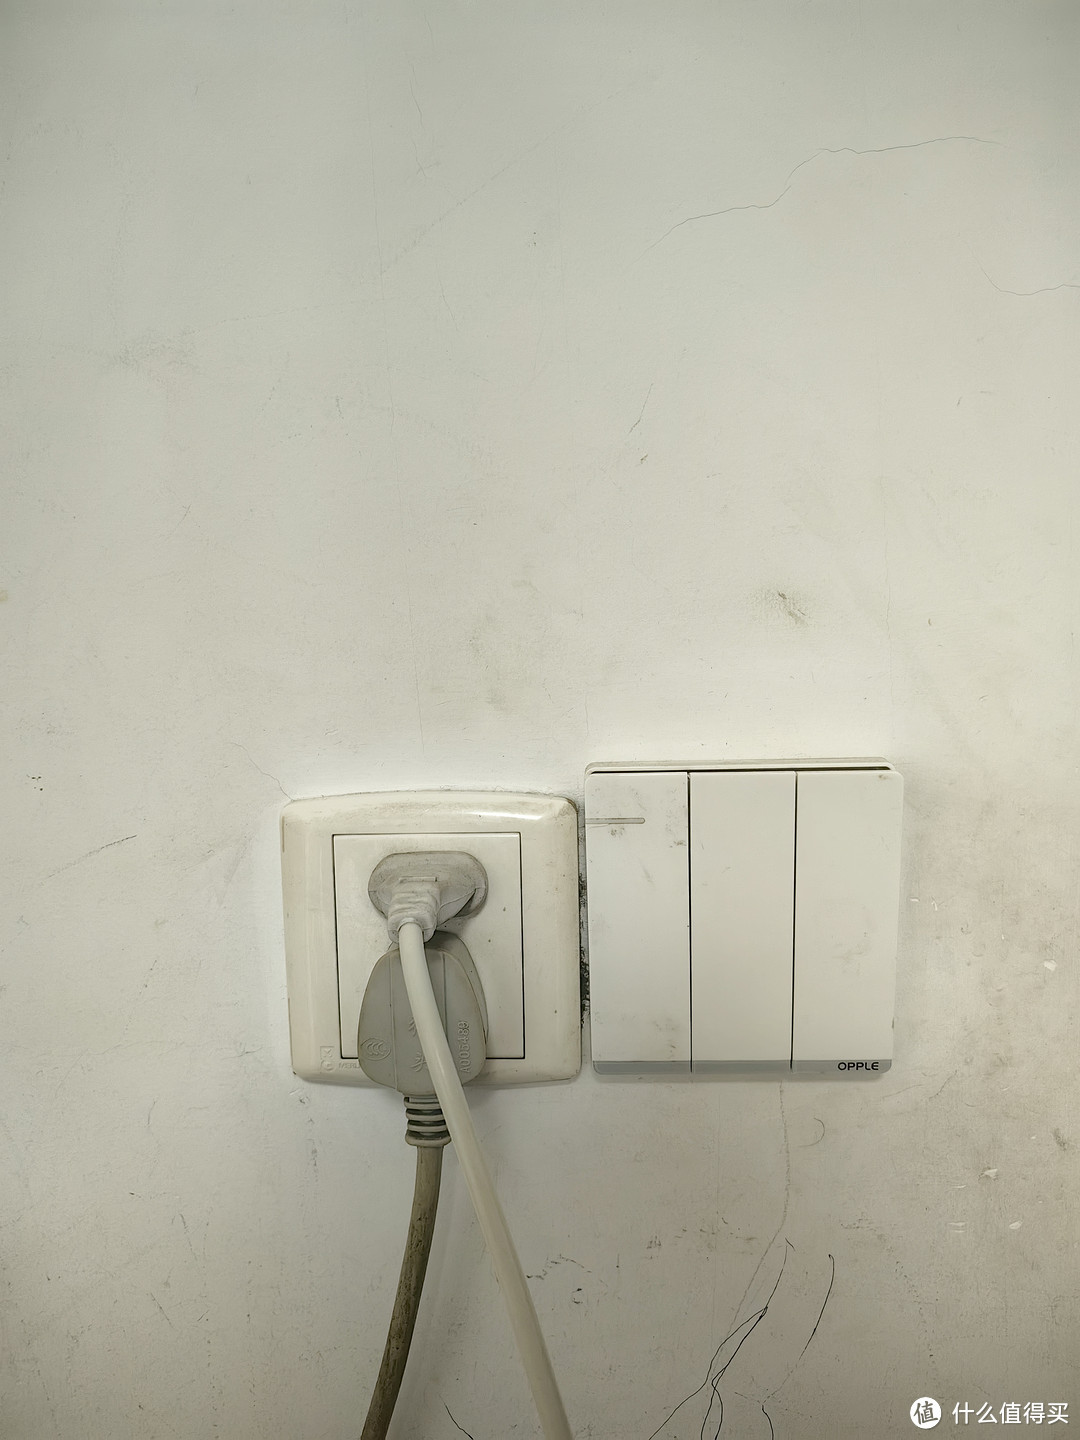 家电不用记得拔插座，避免浪费电